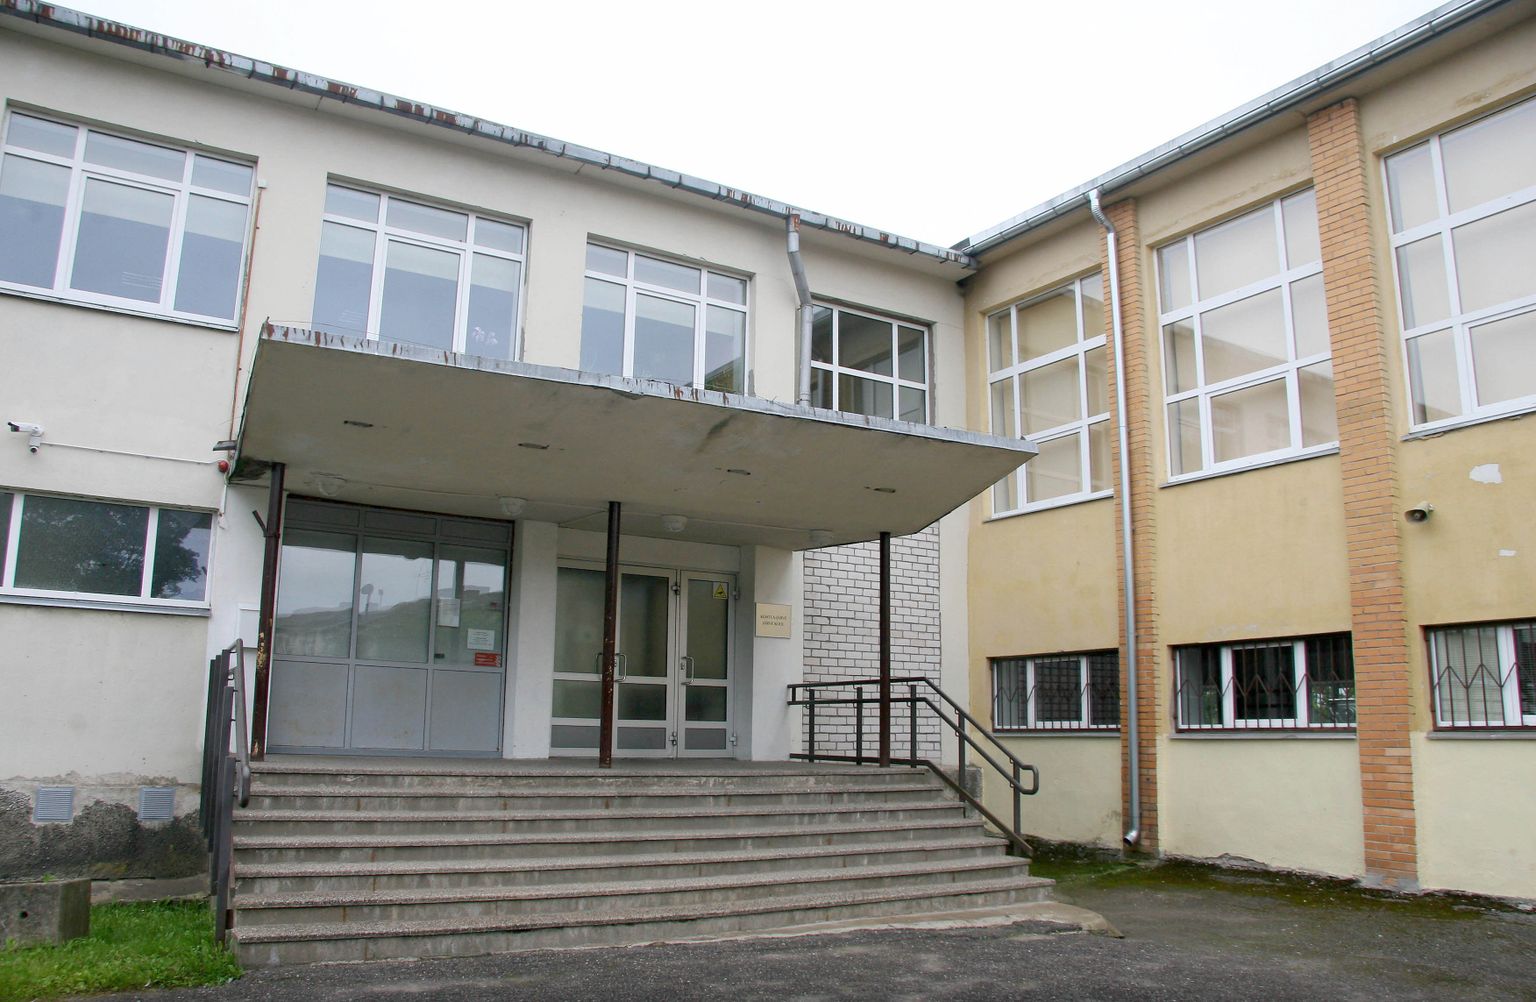 Pool sajandit tagasi valminud koolimaja Kohtla-Järve Katse tänaval, kus tegutseb praegu Järve kool.